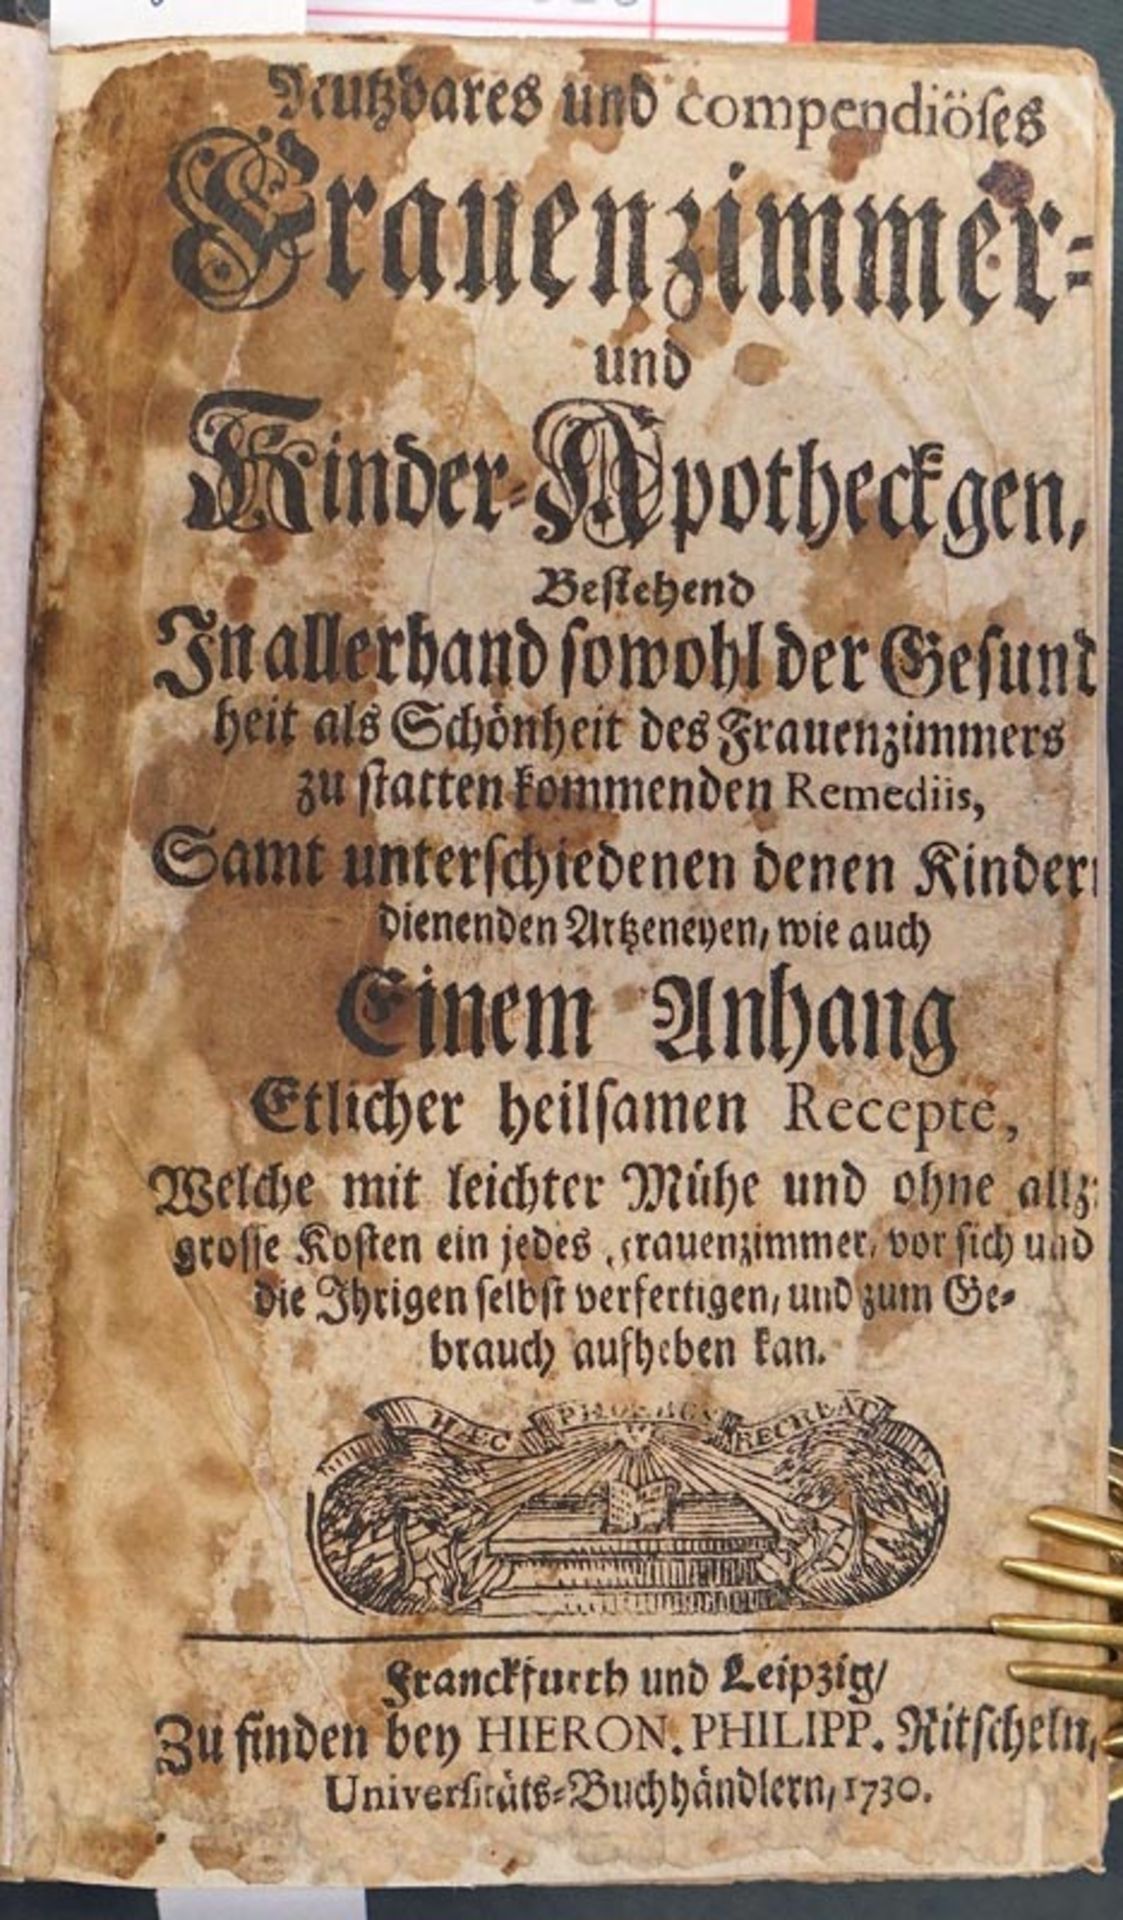 Hellwig, Christoph von: Sammelband mit 3 Werken